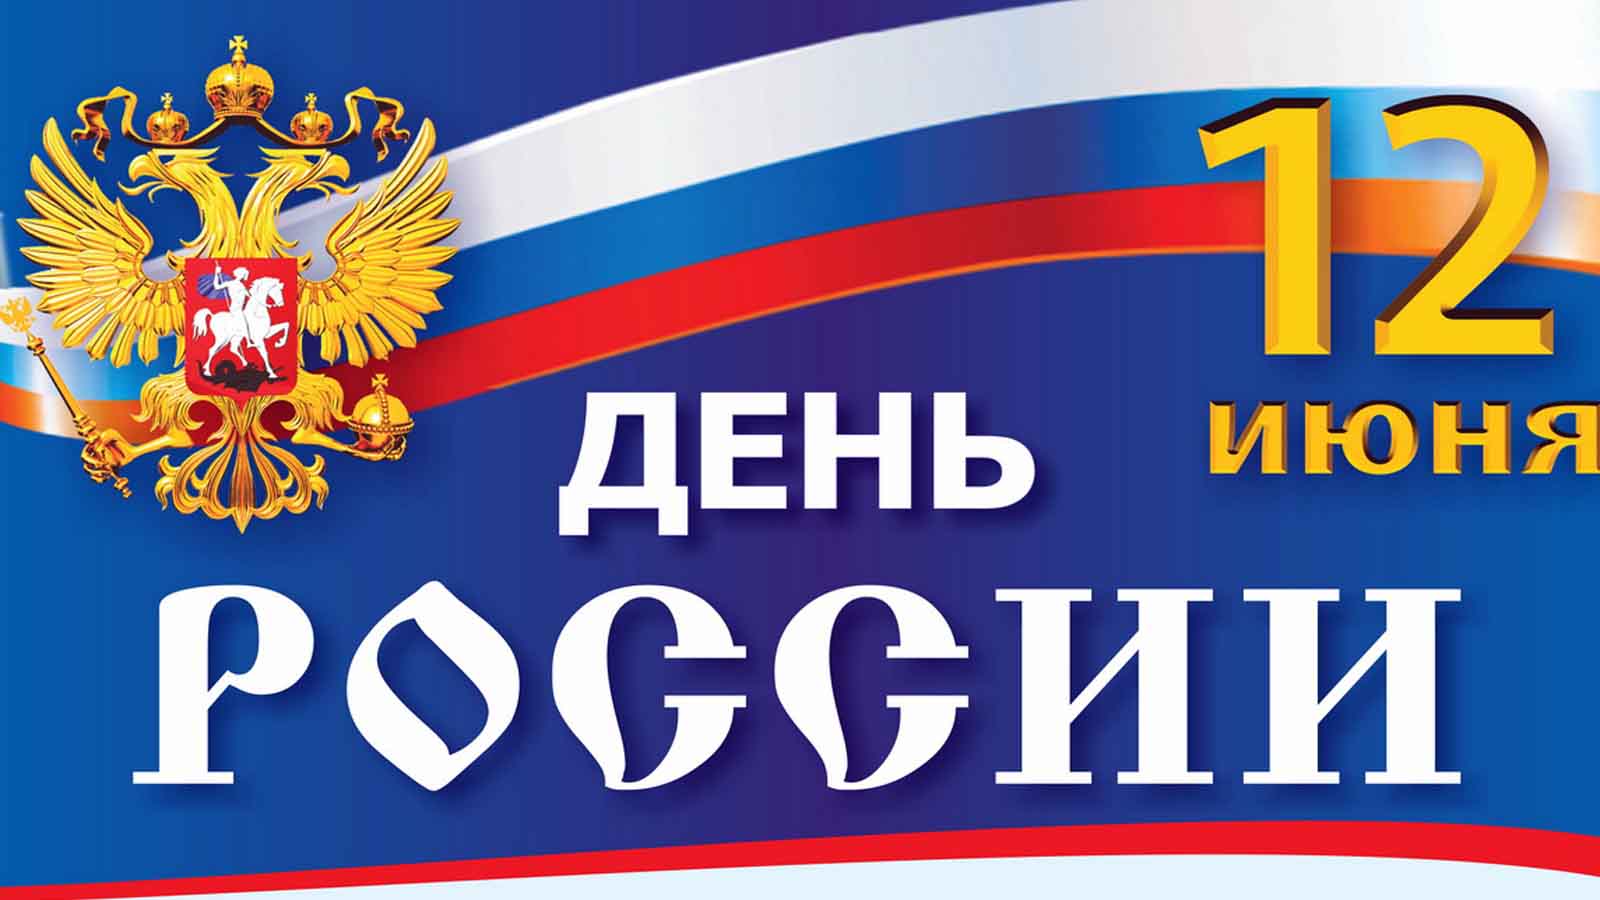 Программа мероприятий, посвящённых празднованию Дня России и Дня города Балабаново